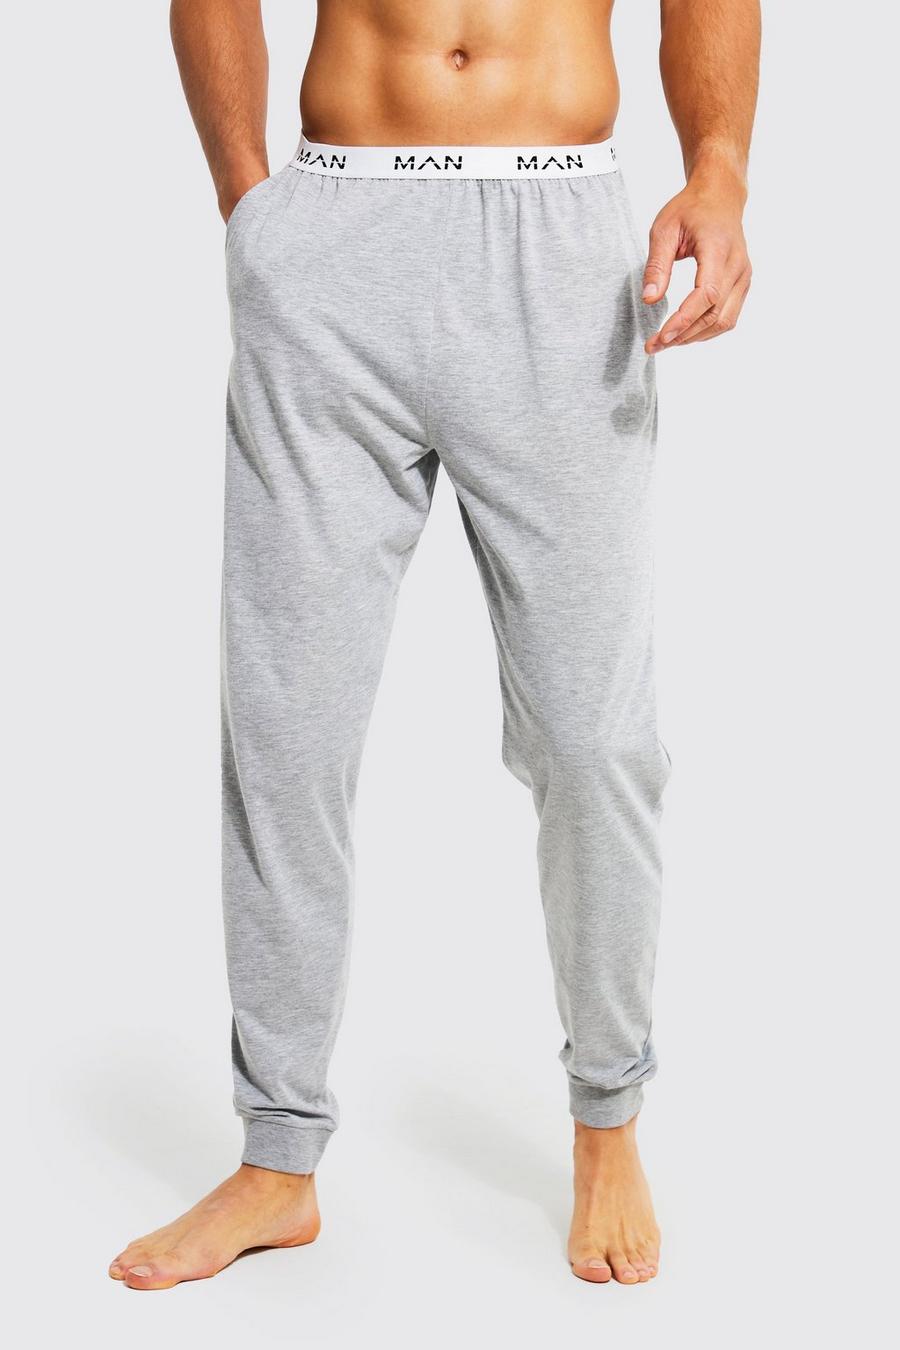 Pantalón deportivo Tall para estar en casa con letras MAN y cintura elástica, Grey marl